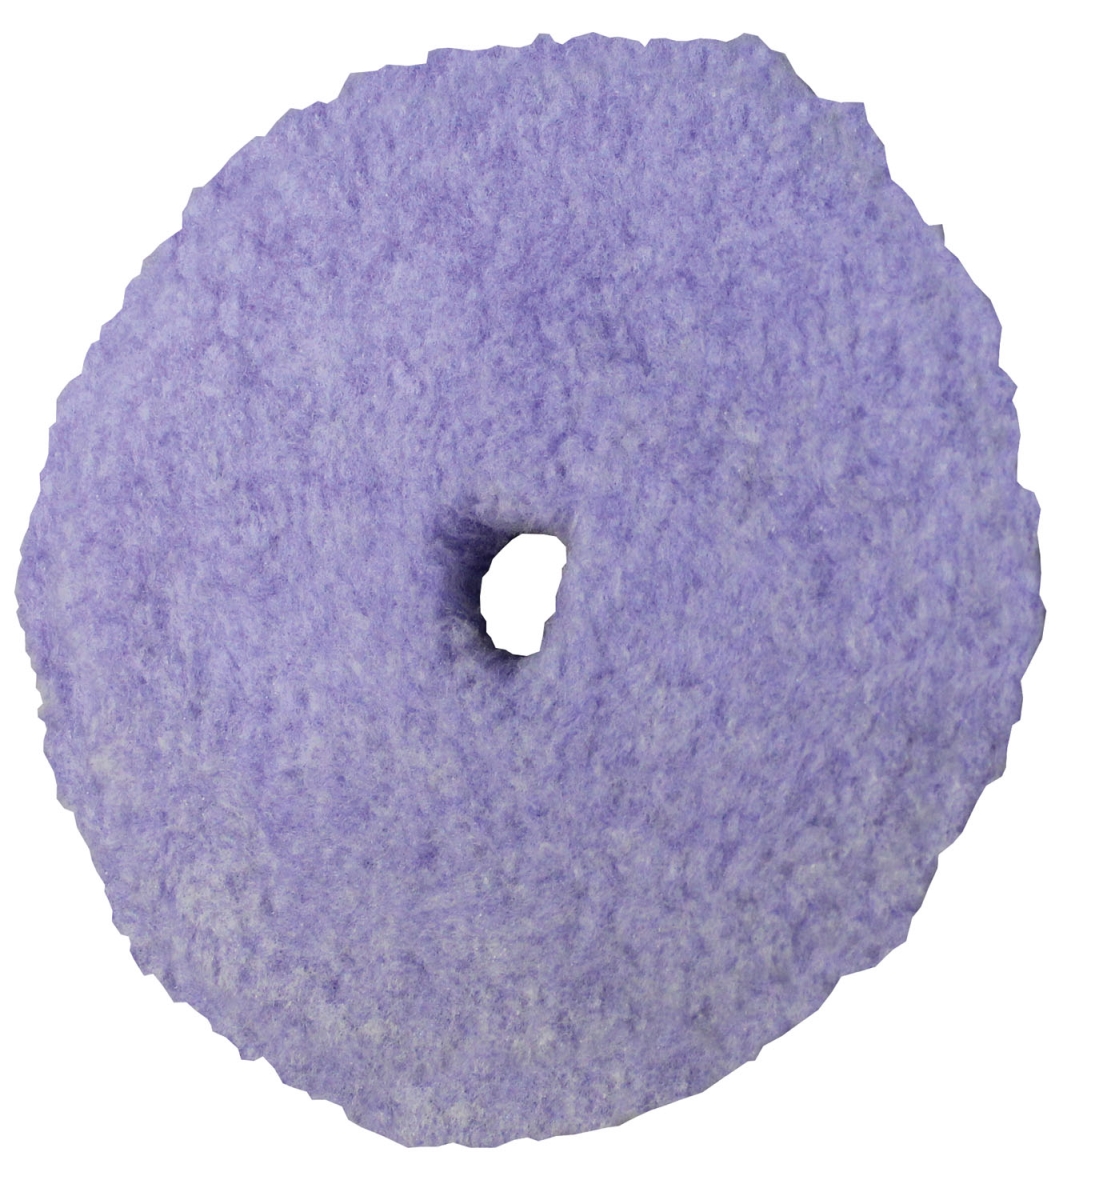 Pst-890186 3 In. Foamed Wool Heavy Cut Pad - Purple - Pack Of 4